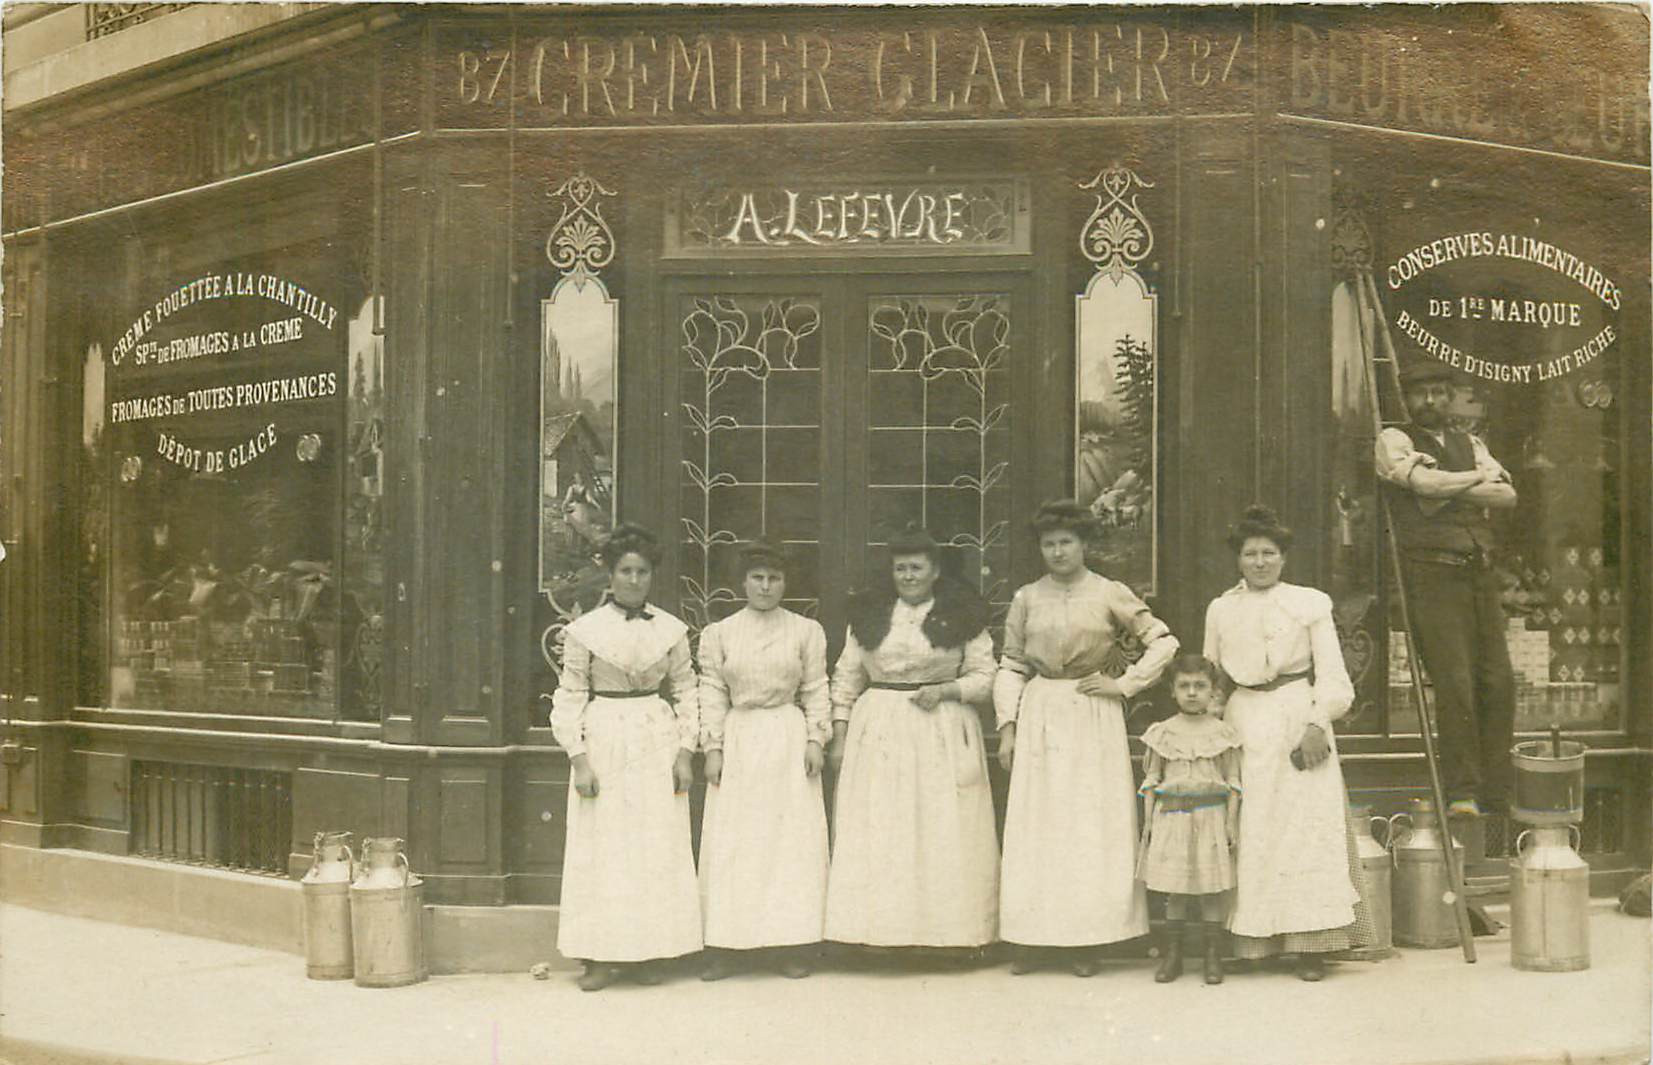 WW PARIS XVI. Crémier Glacier Lefèvre rue de l'Annonciation 1907. Photo carte postale